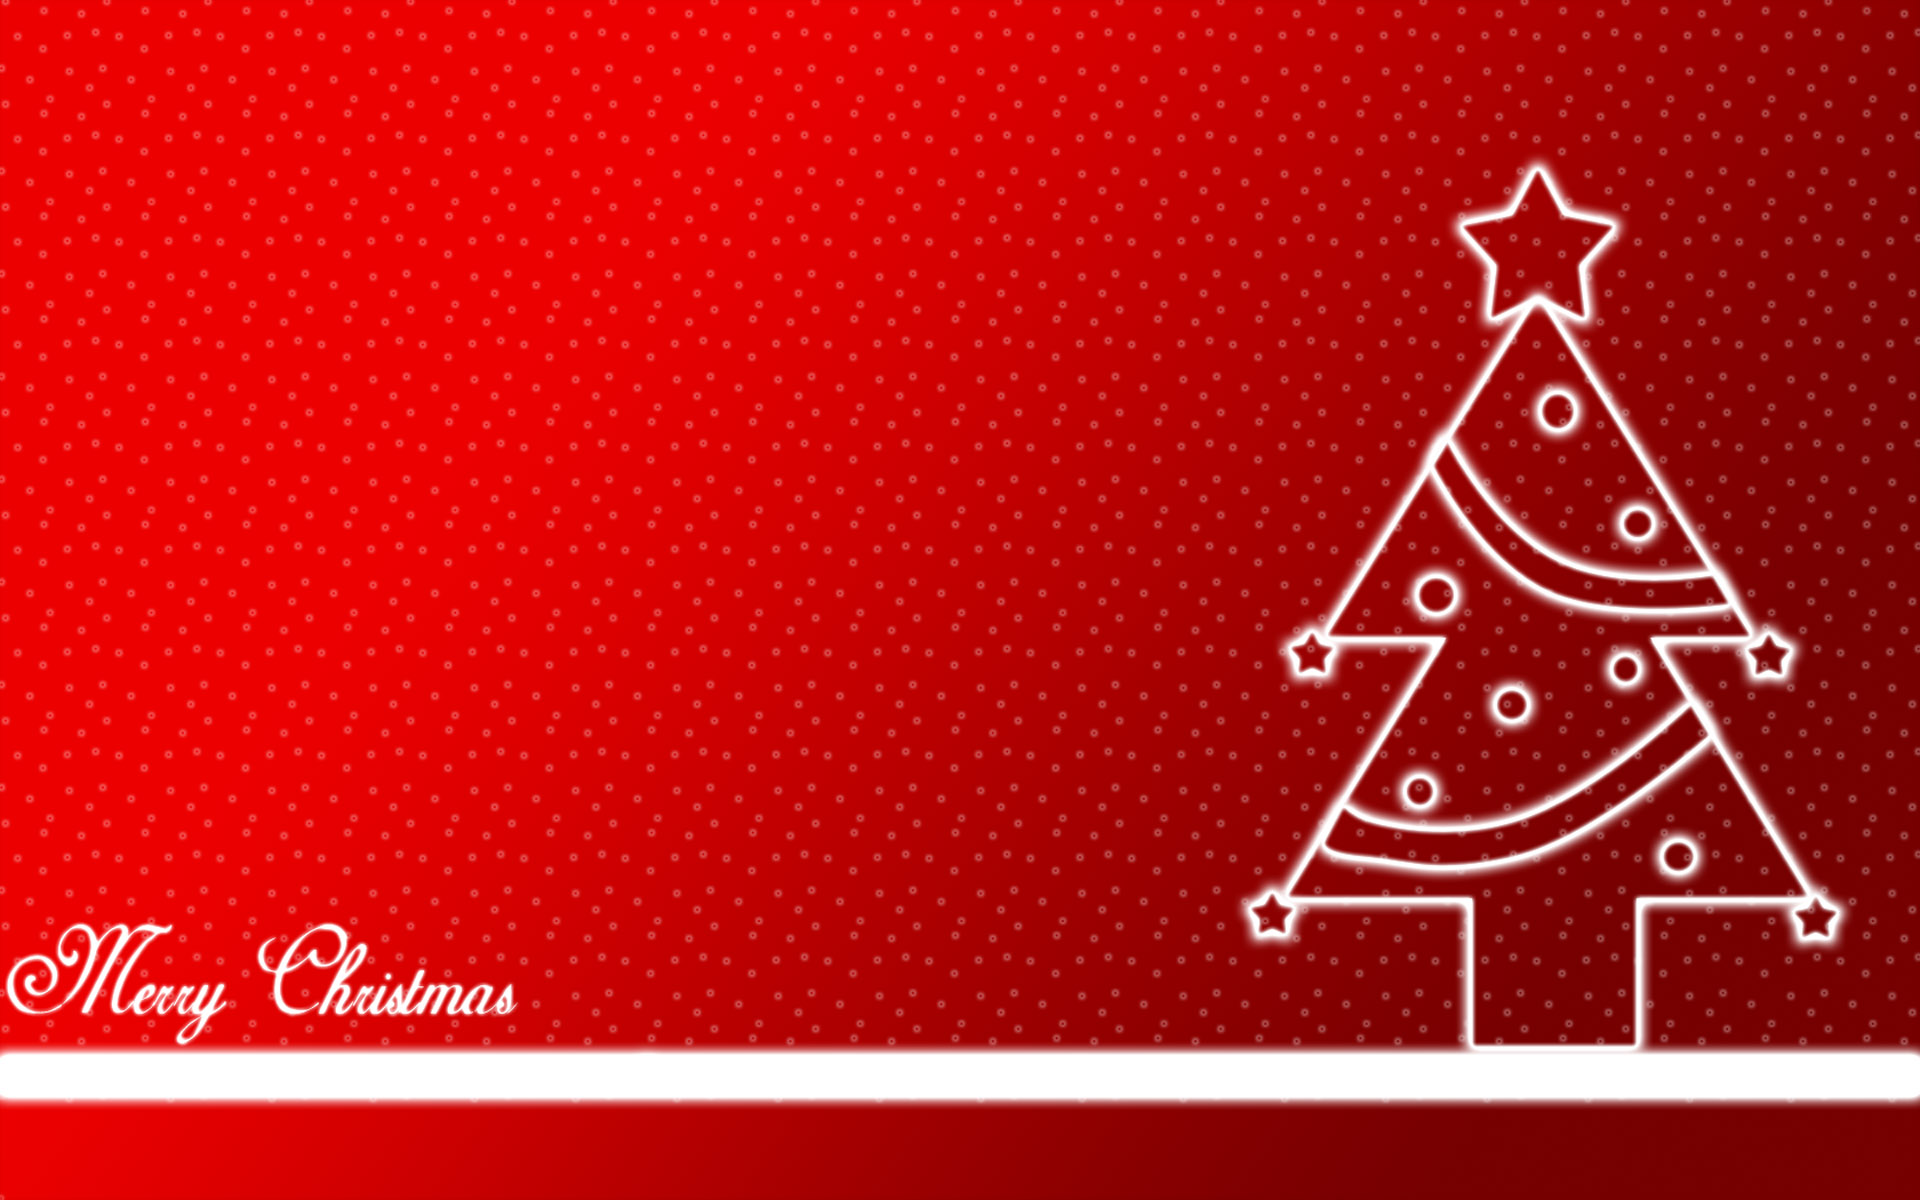 Merry Christmas Desktop Wallpapers - Wallpaper, High Definition, High  Quality, Widescreen